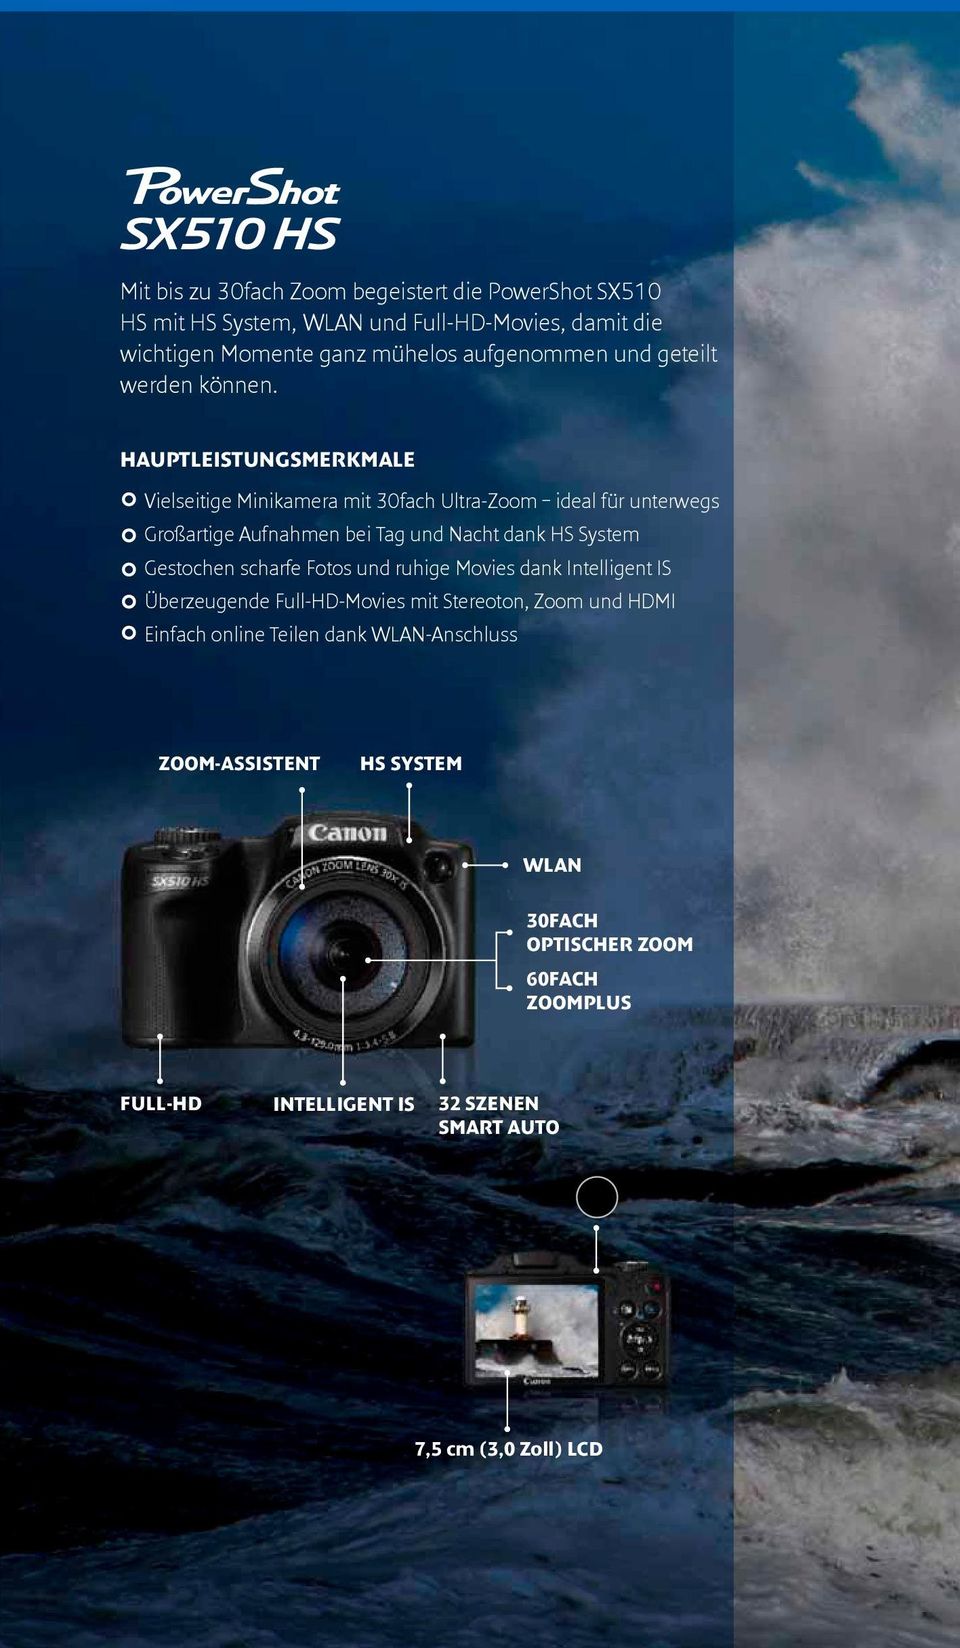 HAUPTLEISTUNGSMERKMALE Vielseitige Minikamera mit 30fach Ultra-Zoom ideal für unterwegs Großartige Aufnahmen bei Tag und Nacht dank HS System Gestochen